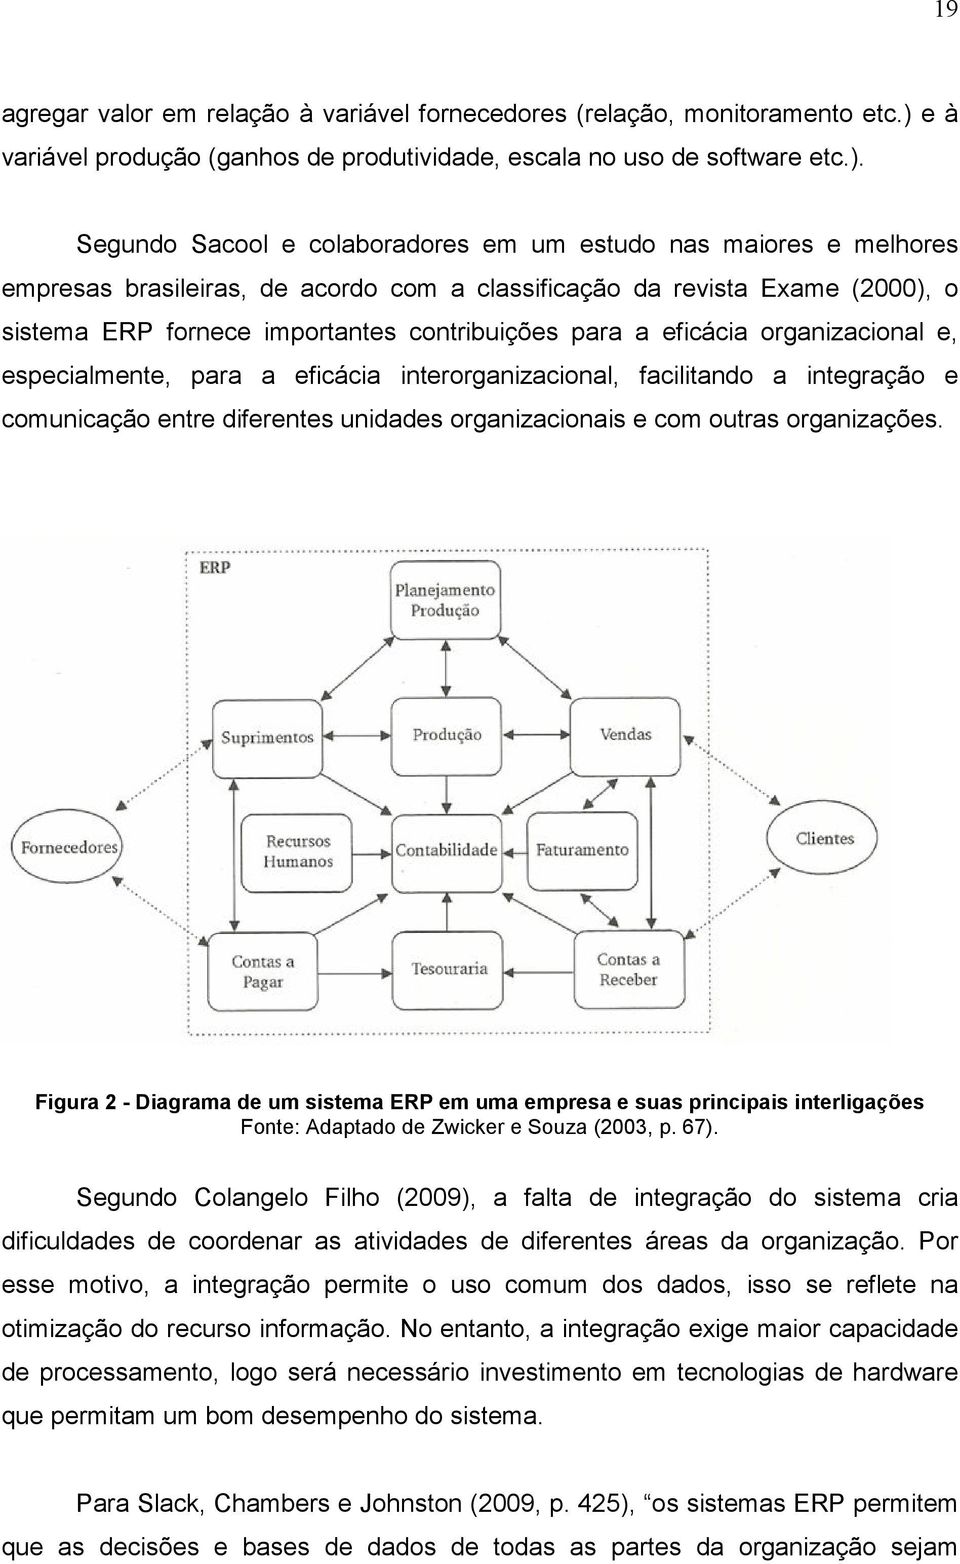 Segundo Sacool e colaboradores em um estudo nas maiores e melhores empresas brasileiras, de acordo com a classificação da revista Exame (2000), o sistema ERP fornece importantes contribuições para a